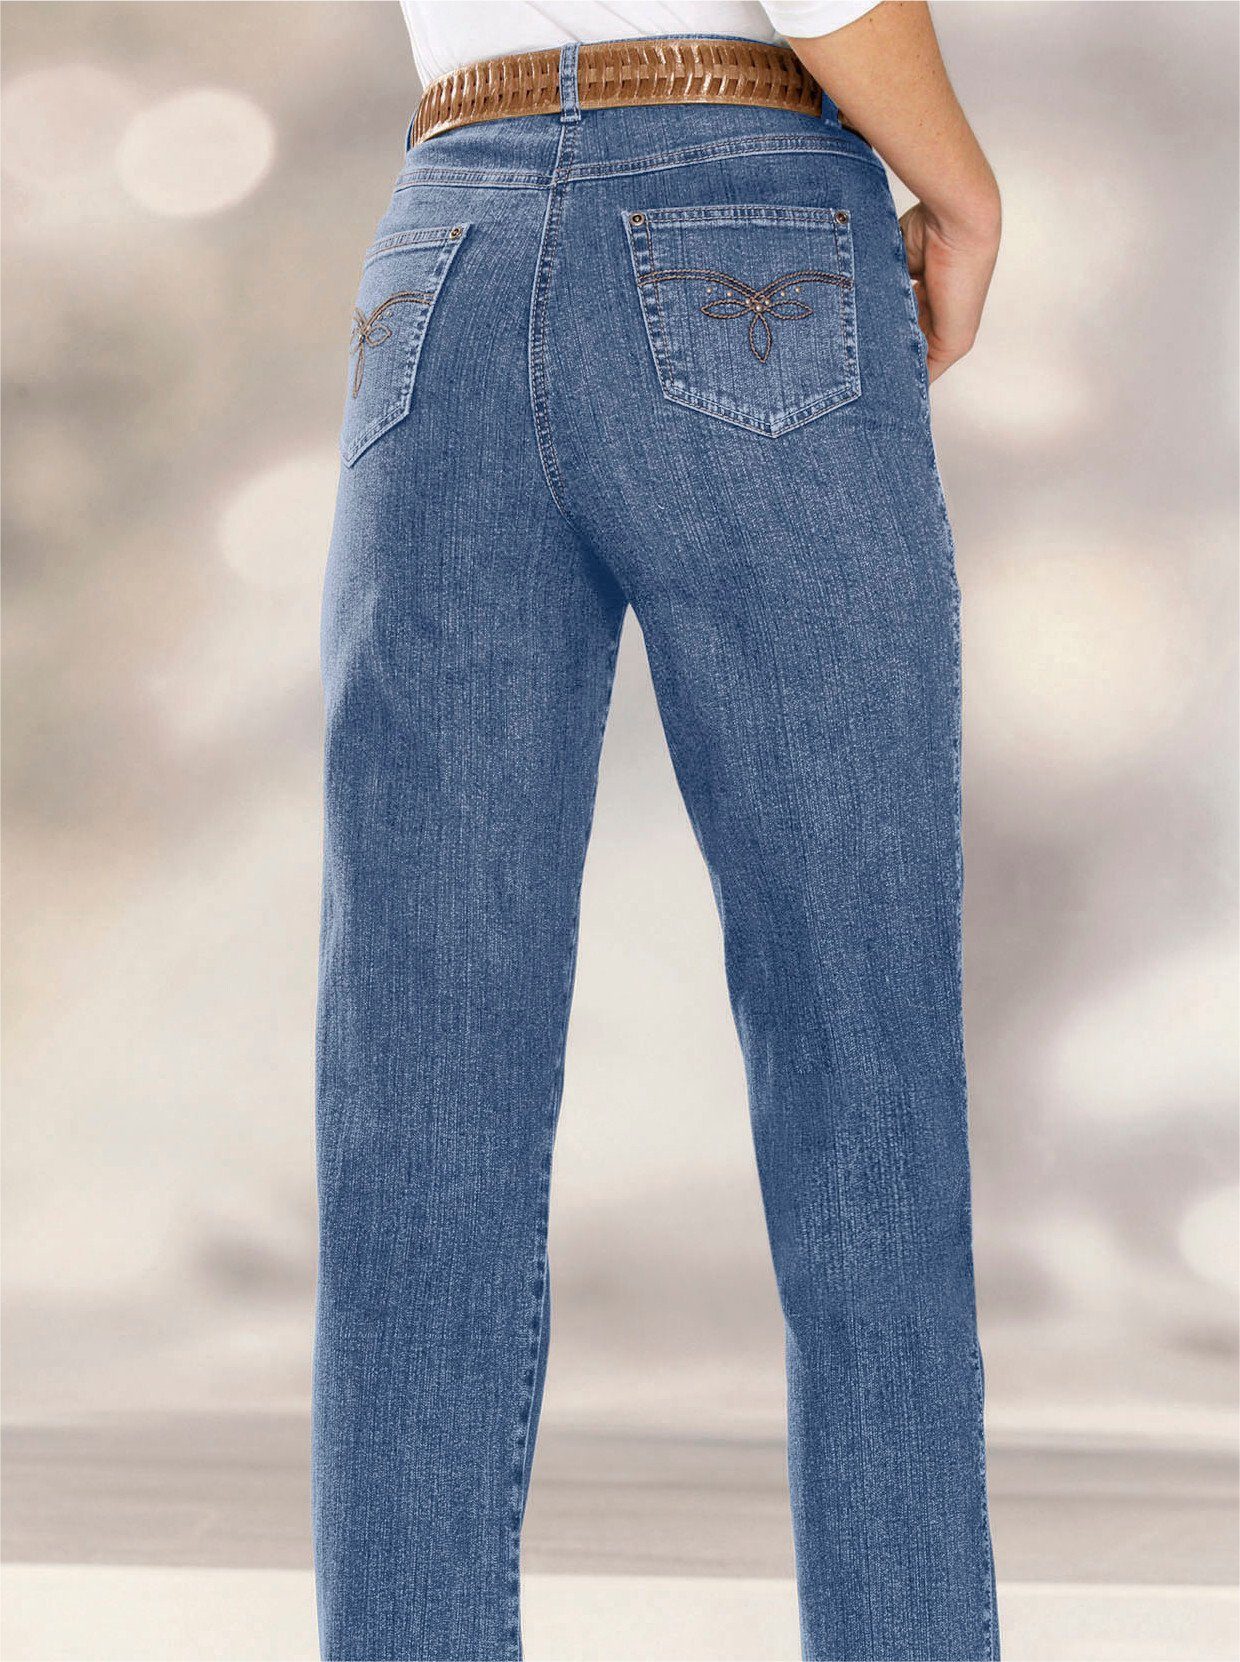 Bequeme WITT WEIDEN blue-bleached Jeans